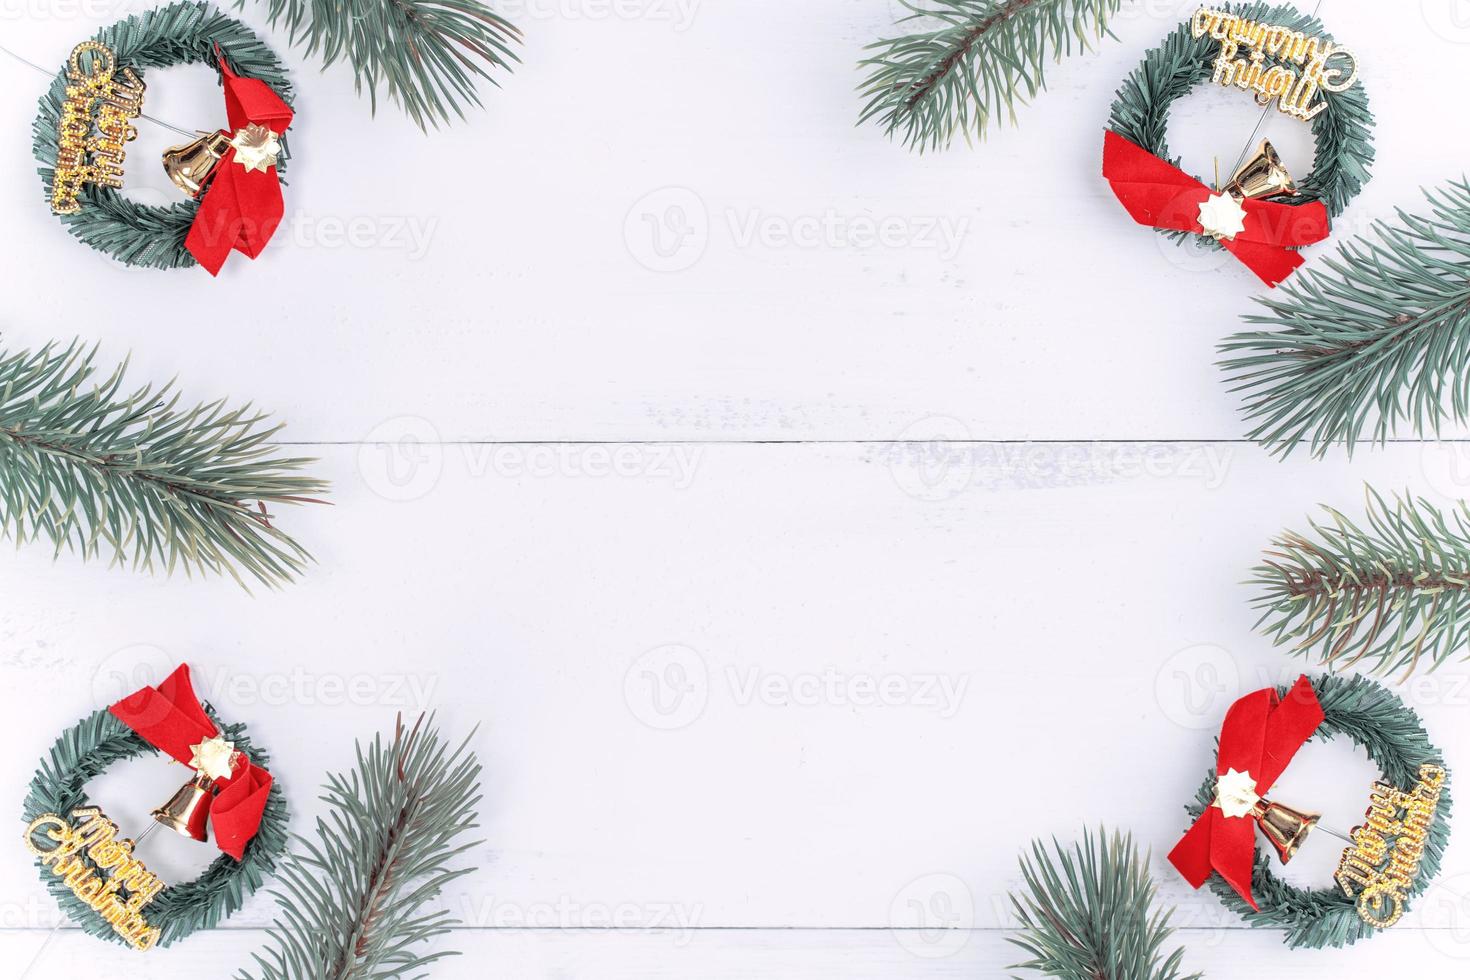 weihnachtskonzept-zusammensetzungsdekorationsgegenstände, tannenzweigkranz und verzierung lokalisiert auf weißem holztisch, draufsicht, flache lage, layout oben. foto